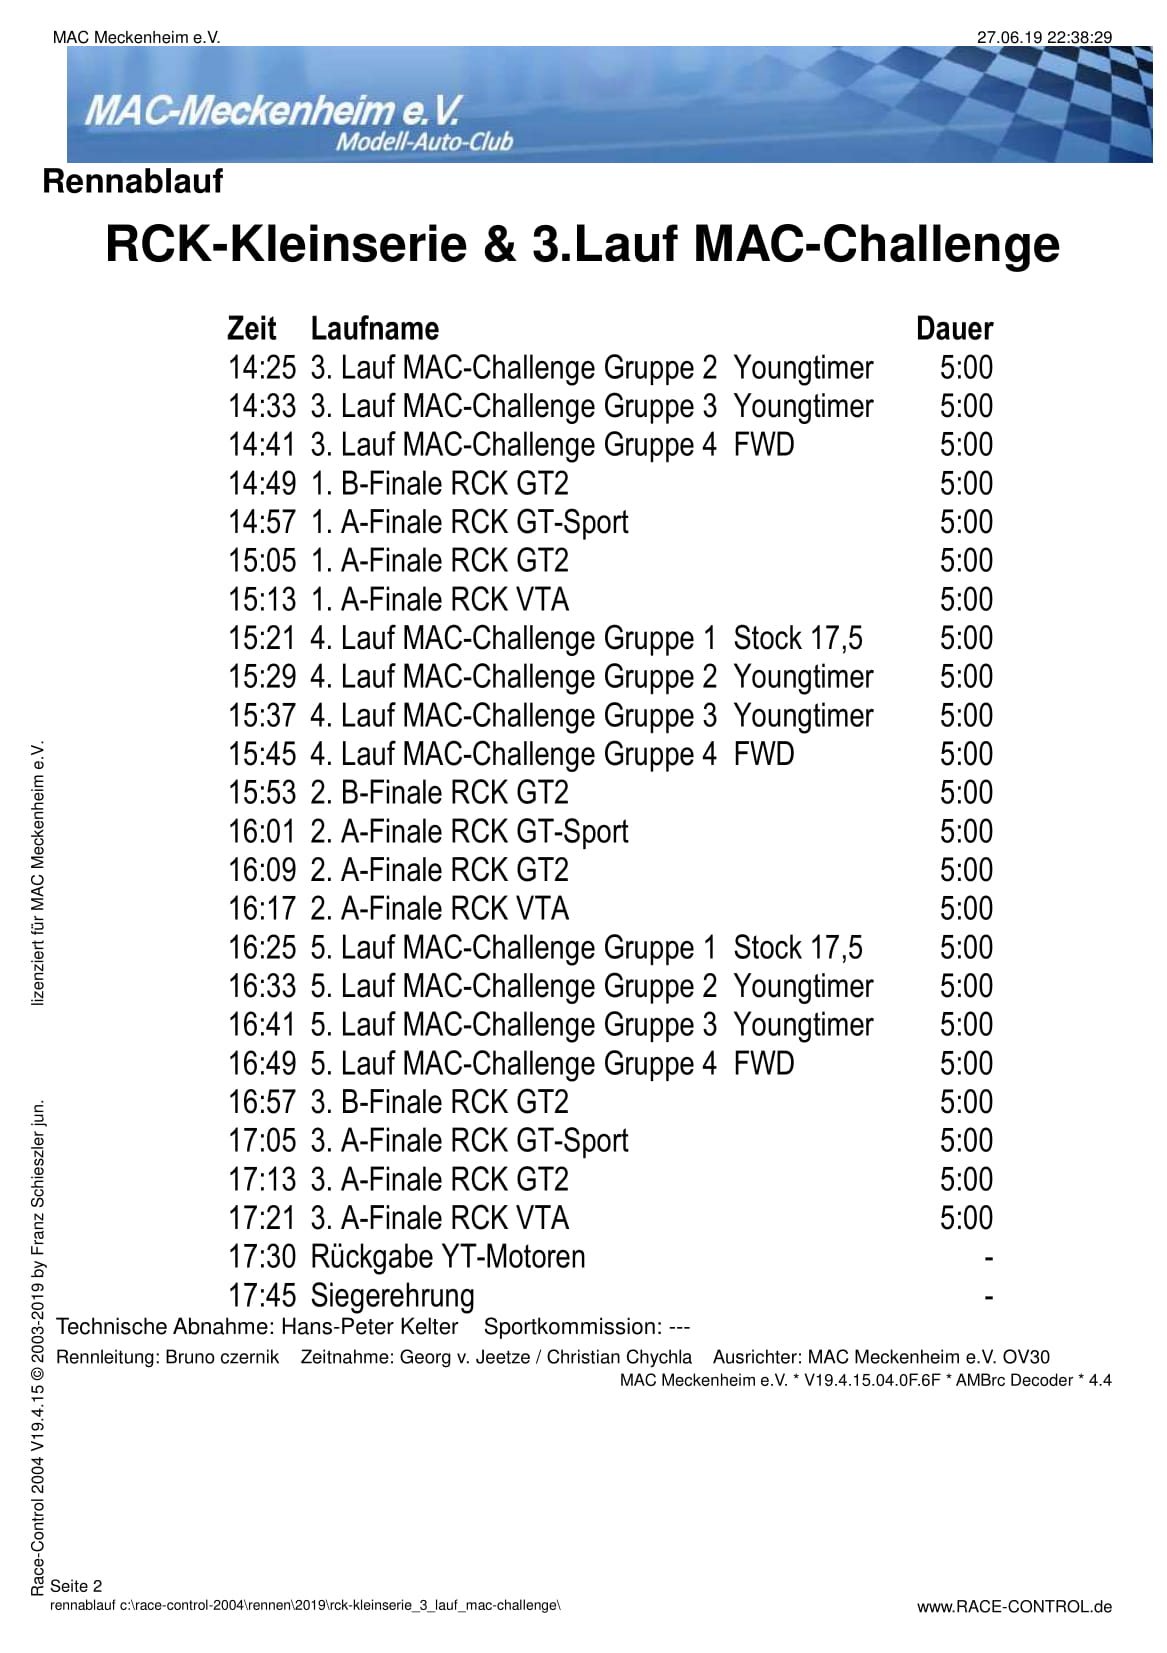 Zeitplan RCK-KleinSerie & 3. Lauf MAC-Challenge